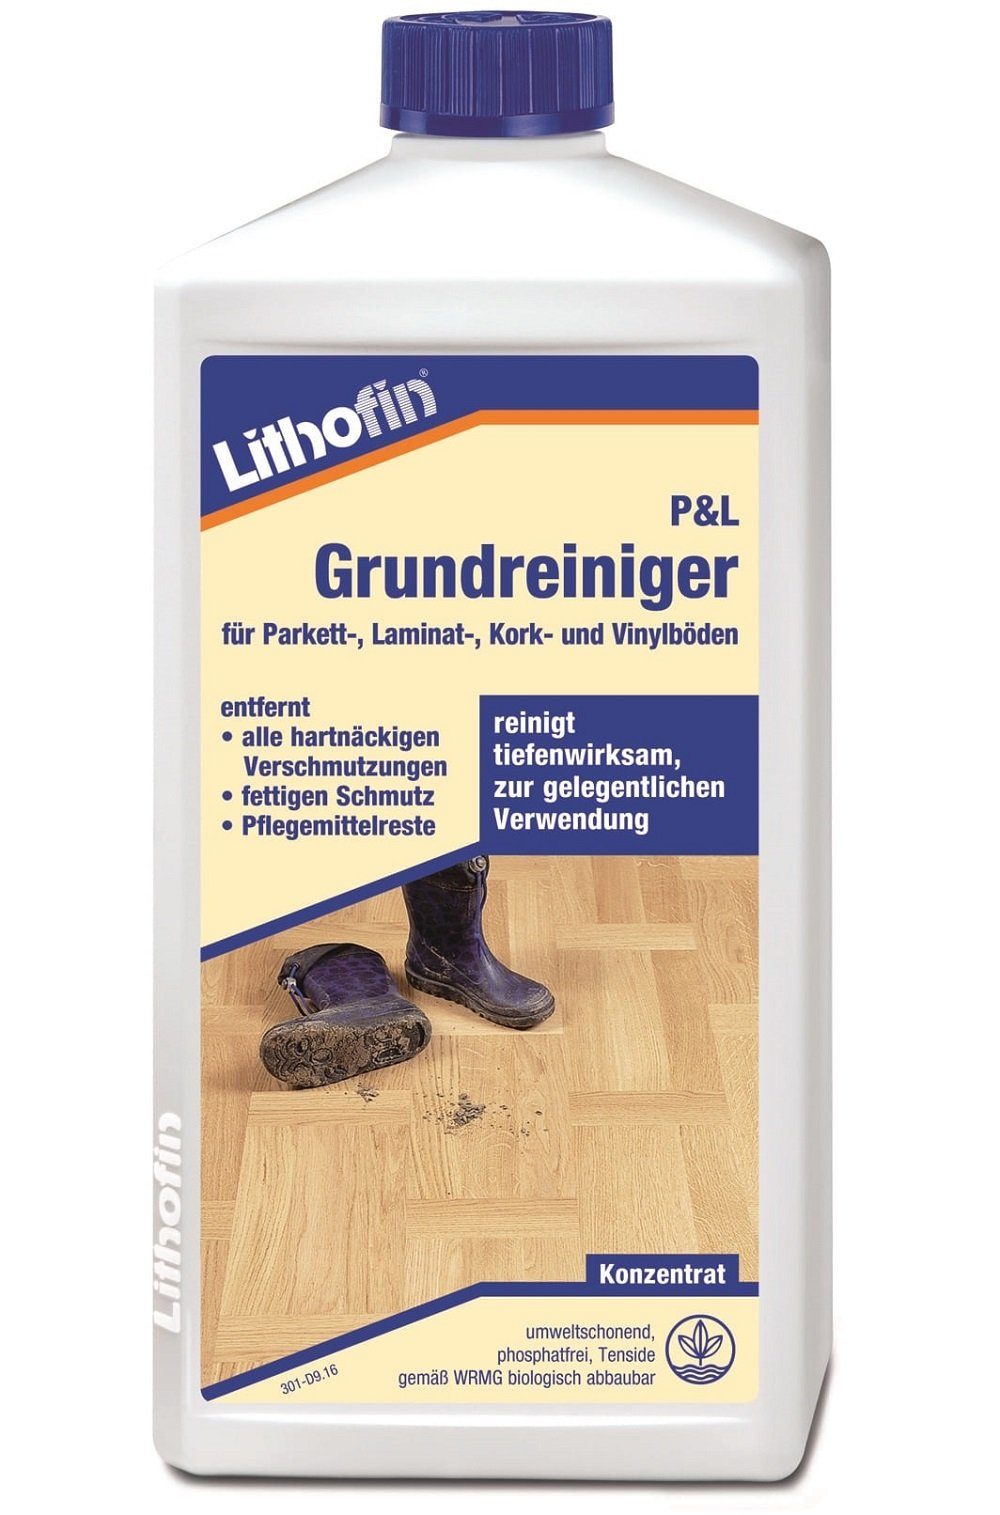 Lithofin LITHOFIN Parkett- und Laminat Grundreiniger für Parkett, Laminat und Naturstein-Reiniger | Steinreiniger